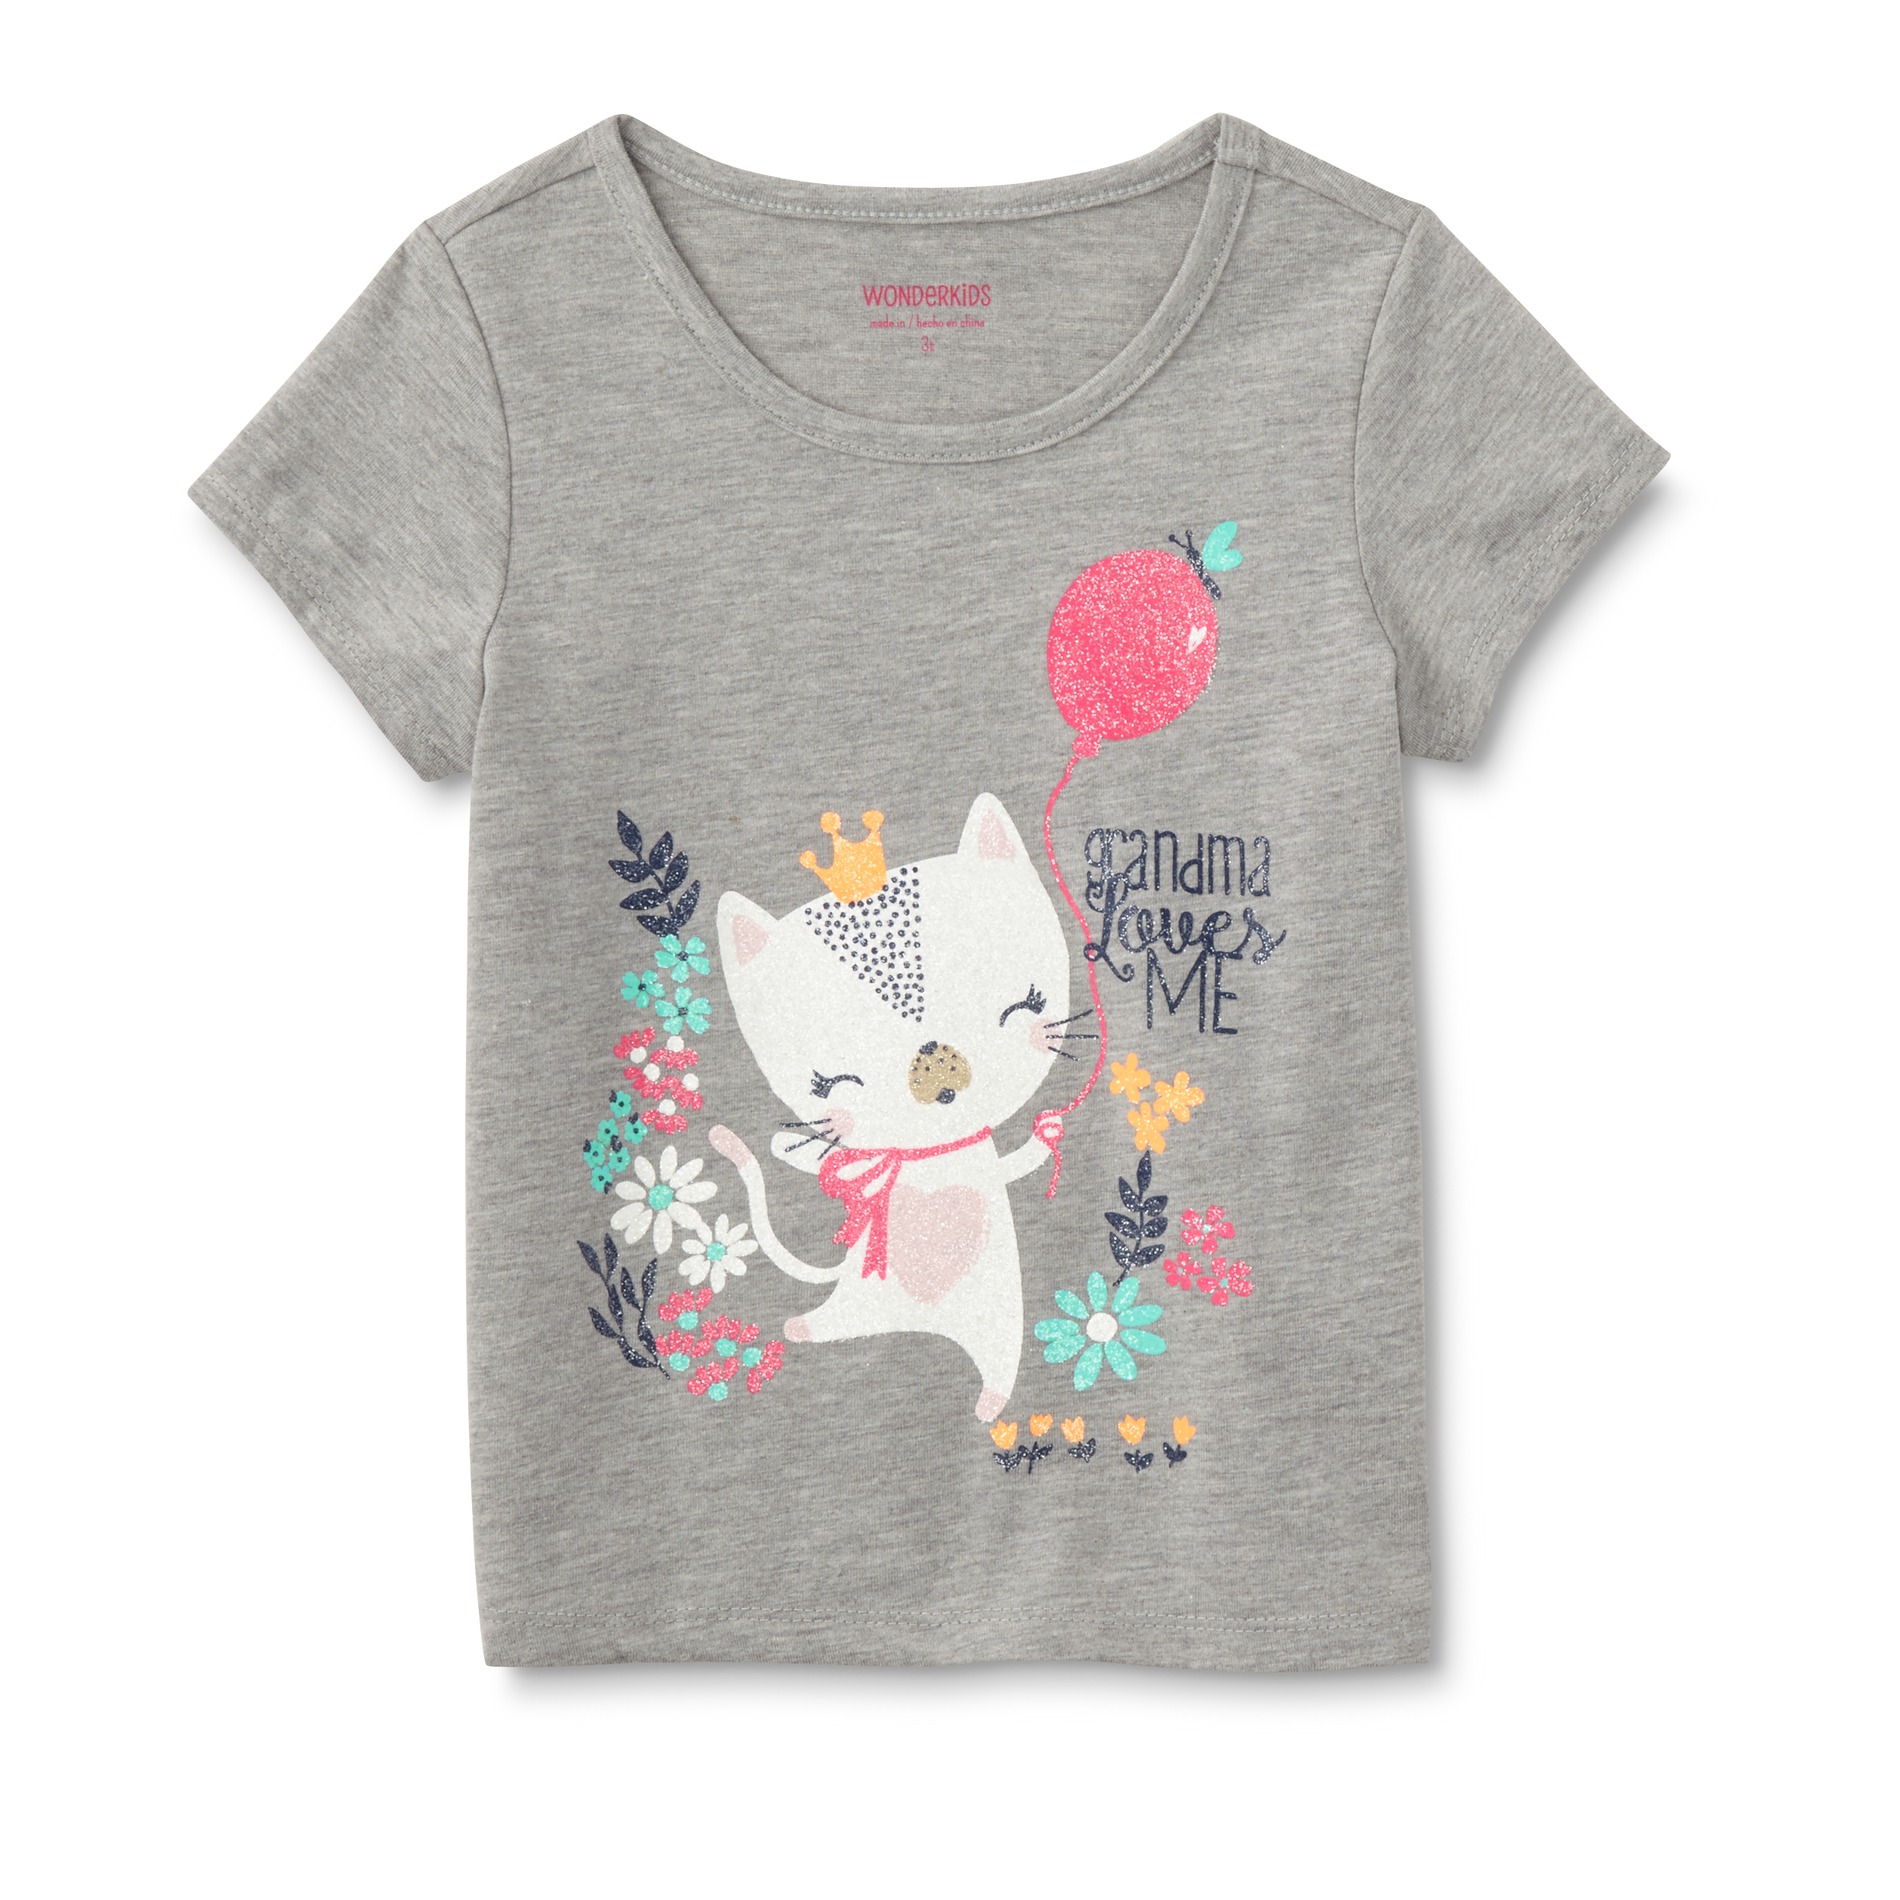 WonderKids Infant & Toddler Girls' T-Shirt - Grandma Loves Me